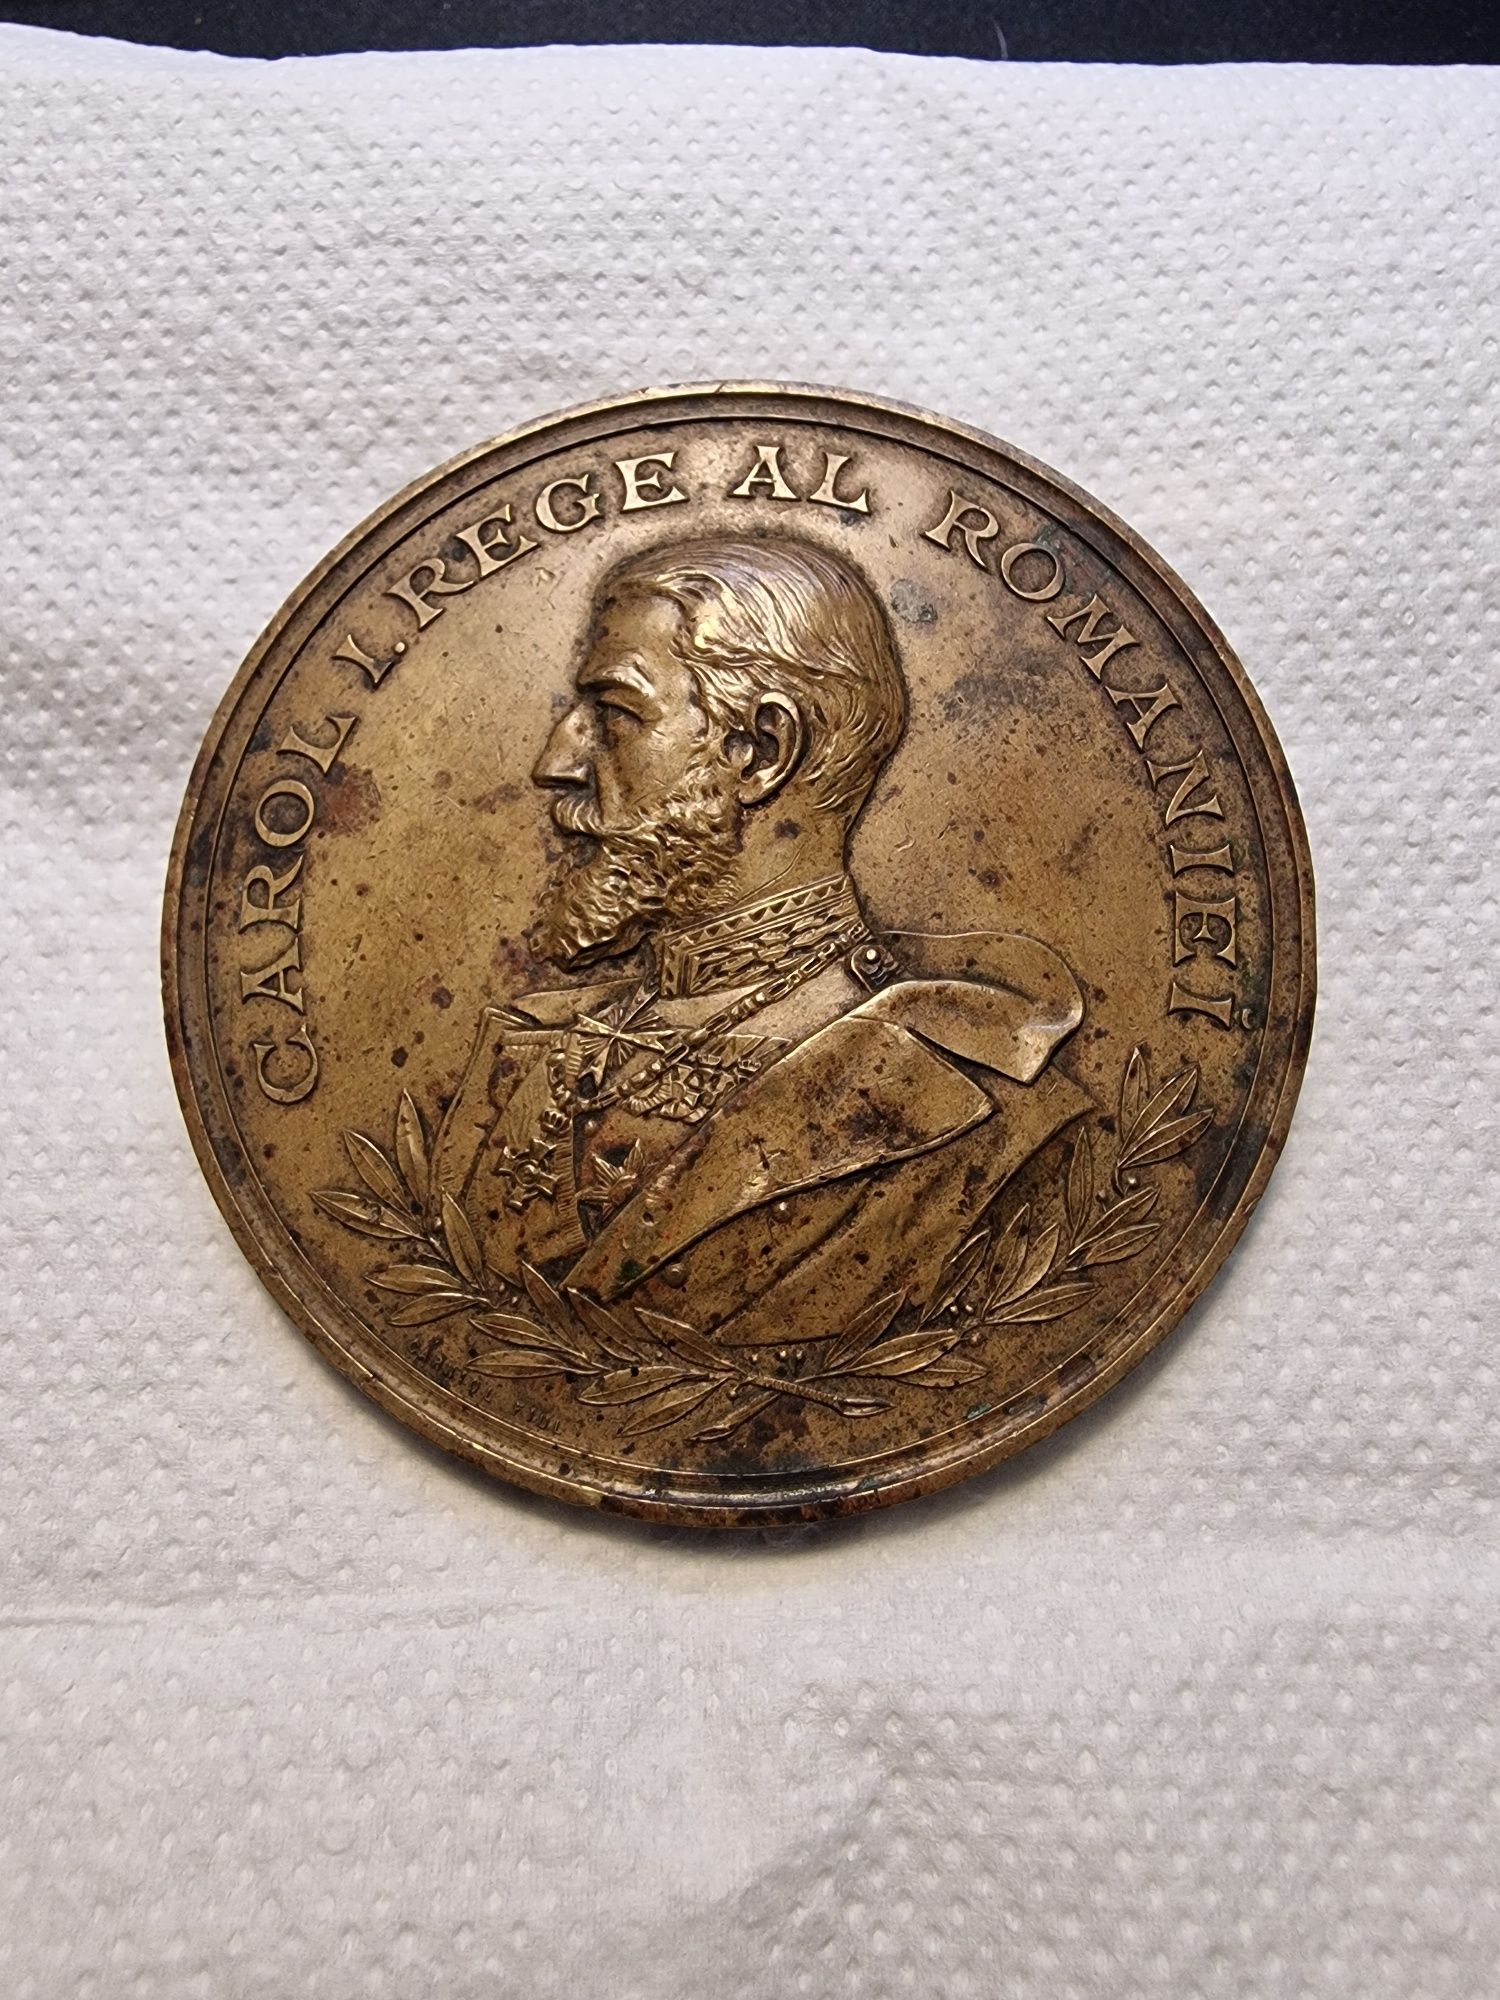 Medalie Carol 1897 Universitatea din Iasi